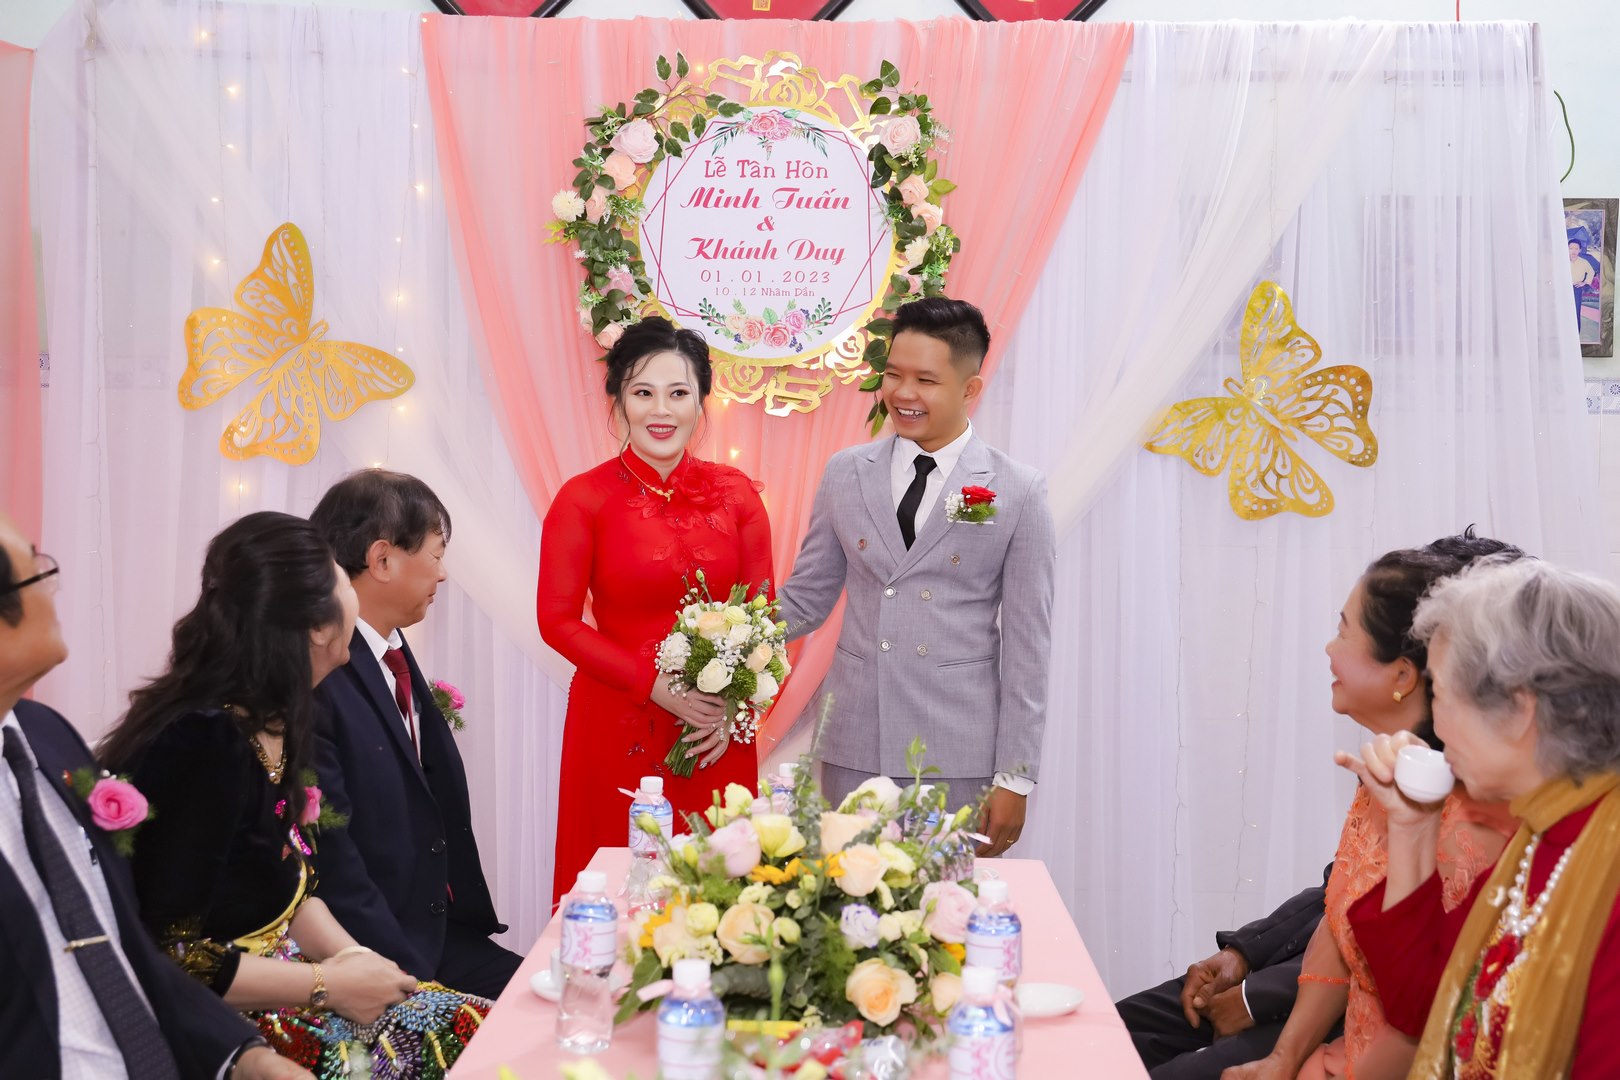 Chụp hình cưới ở Phan Thiết